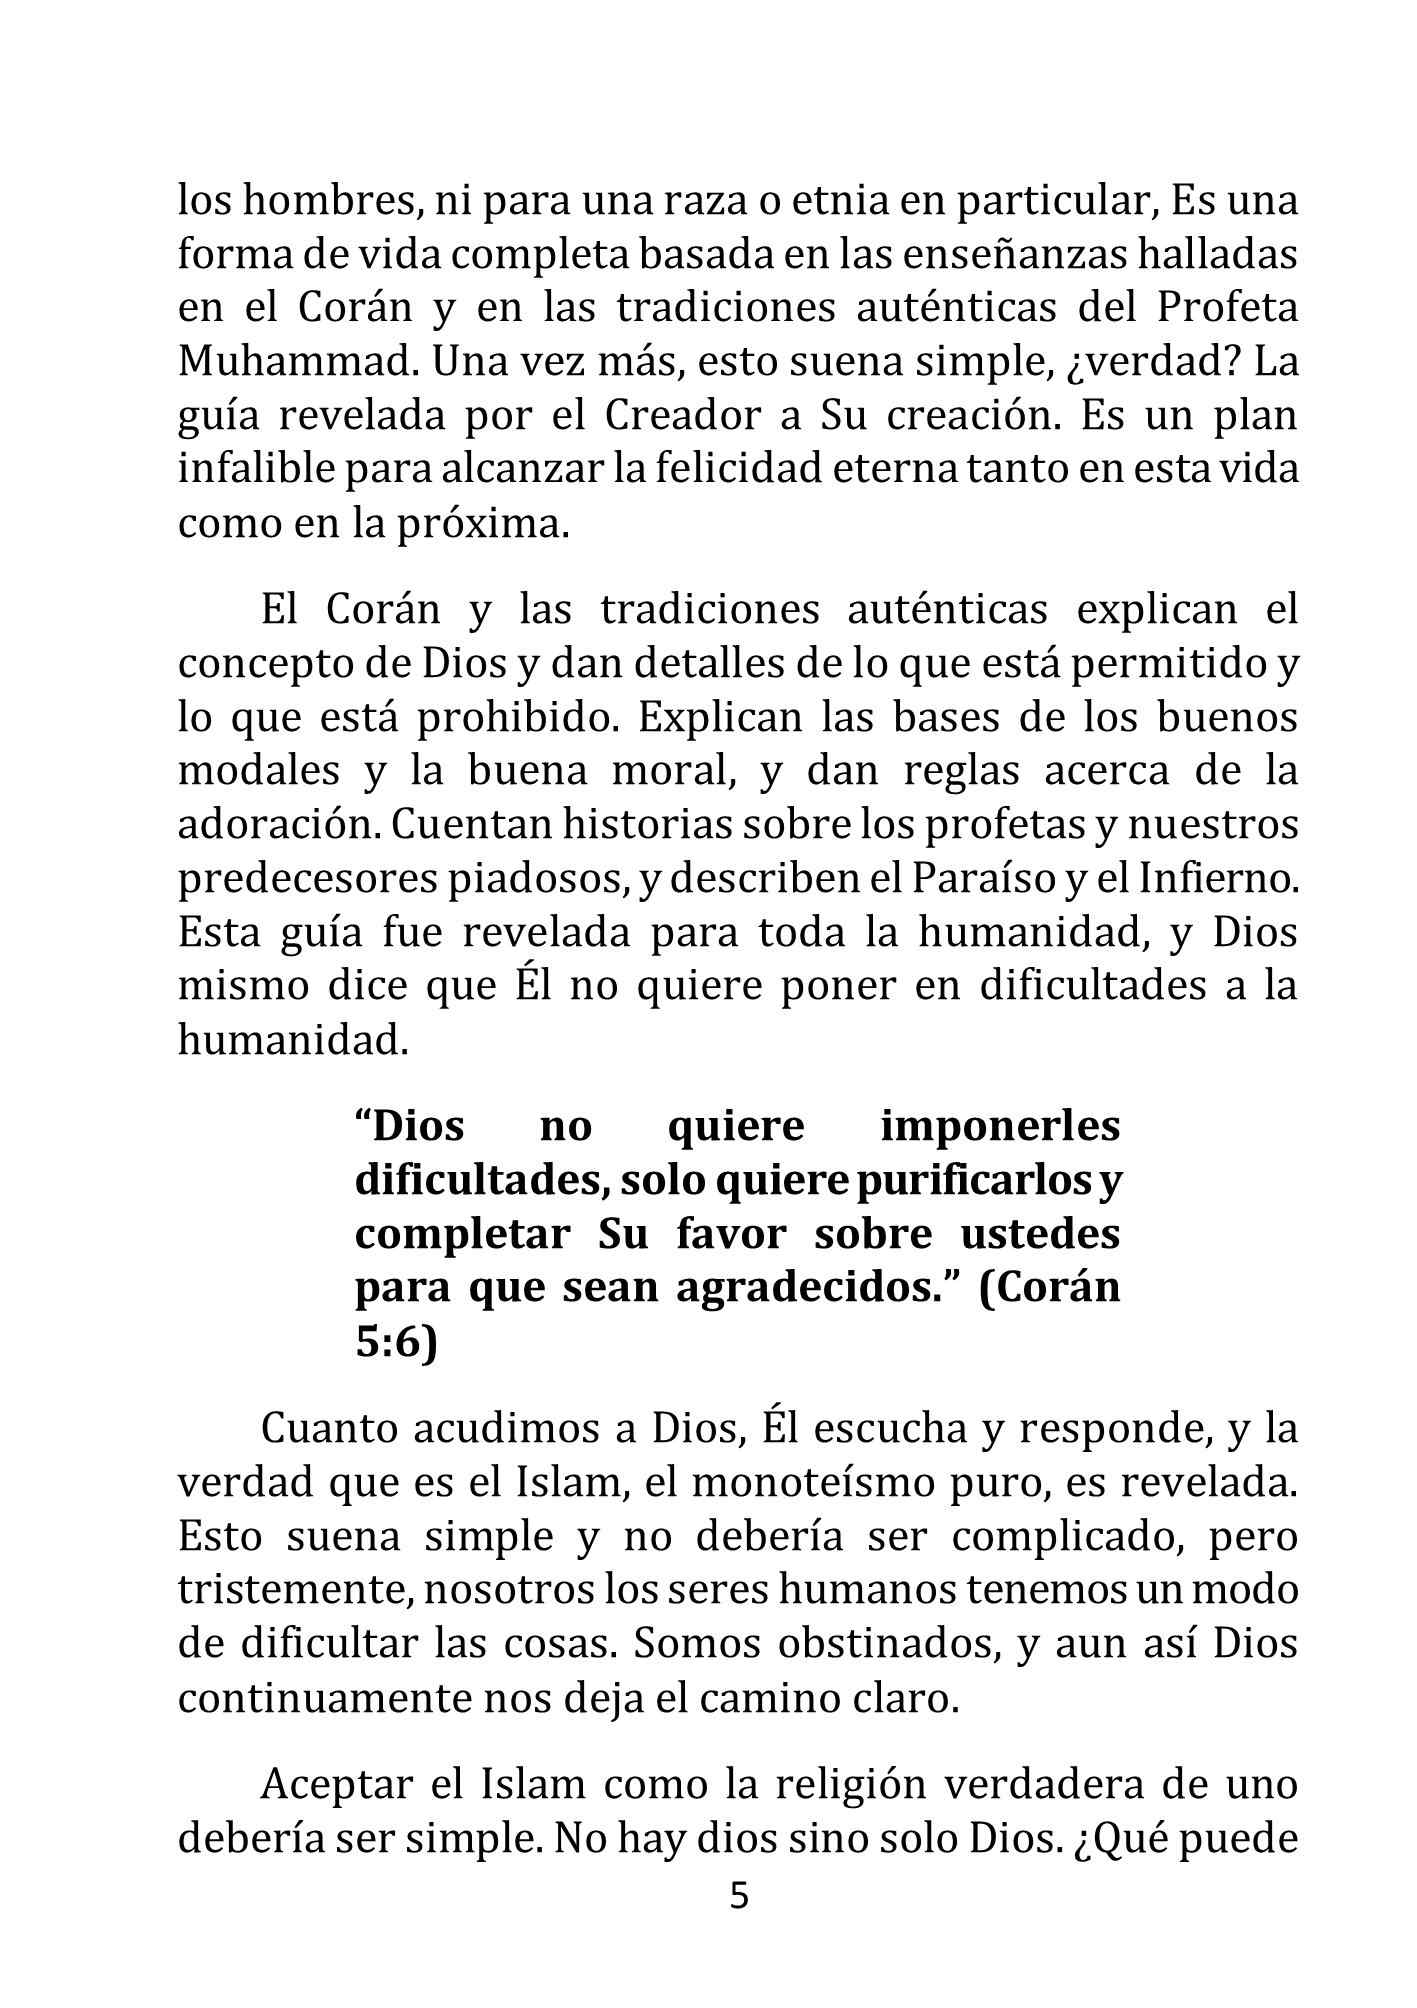 إسباني - الدخول في الإسلام - Aceptar el Islam.pdf, 12-Sayfa 